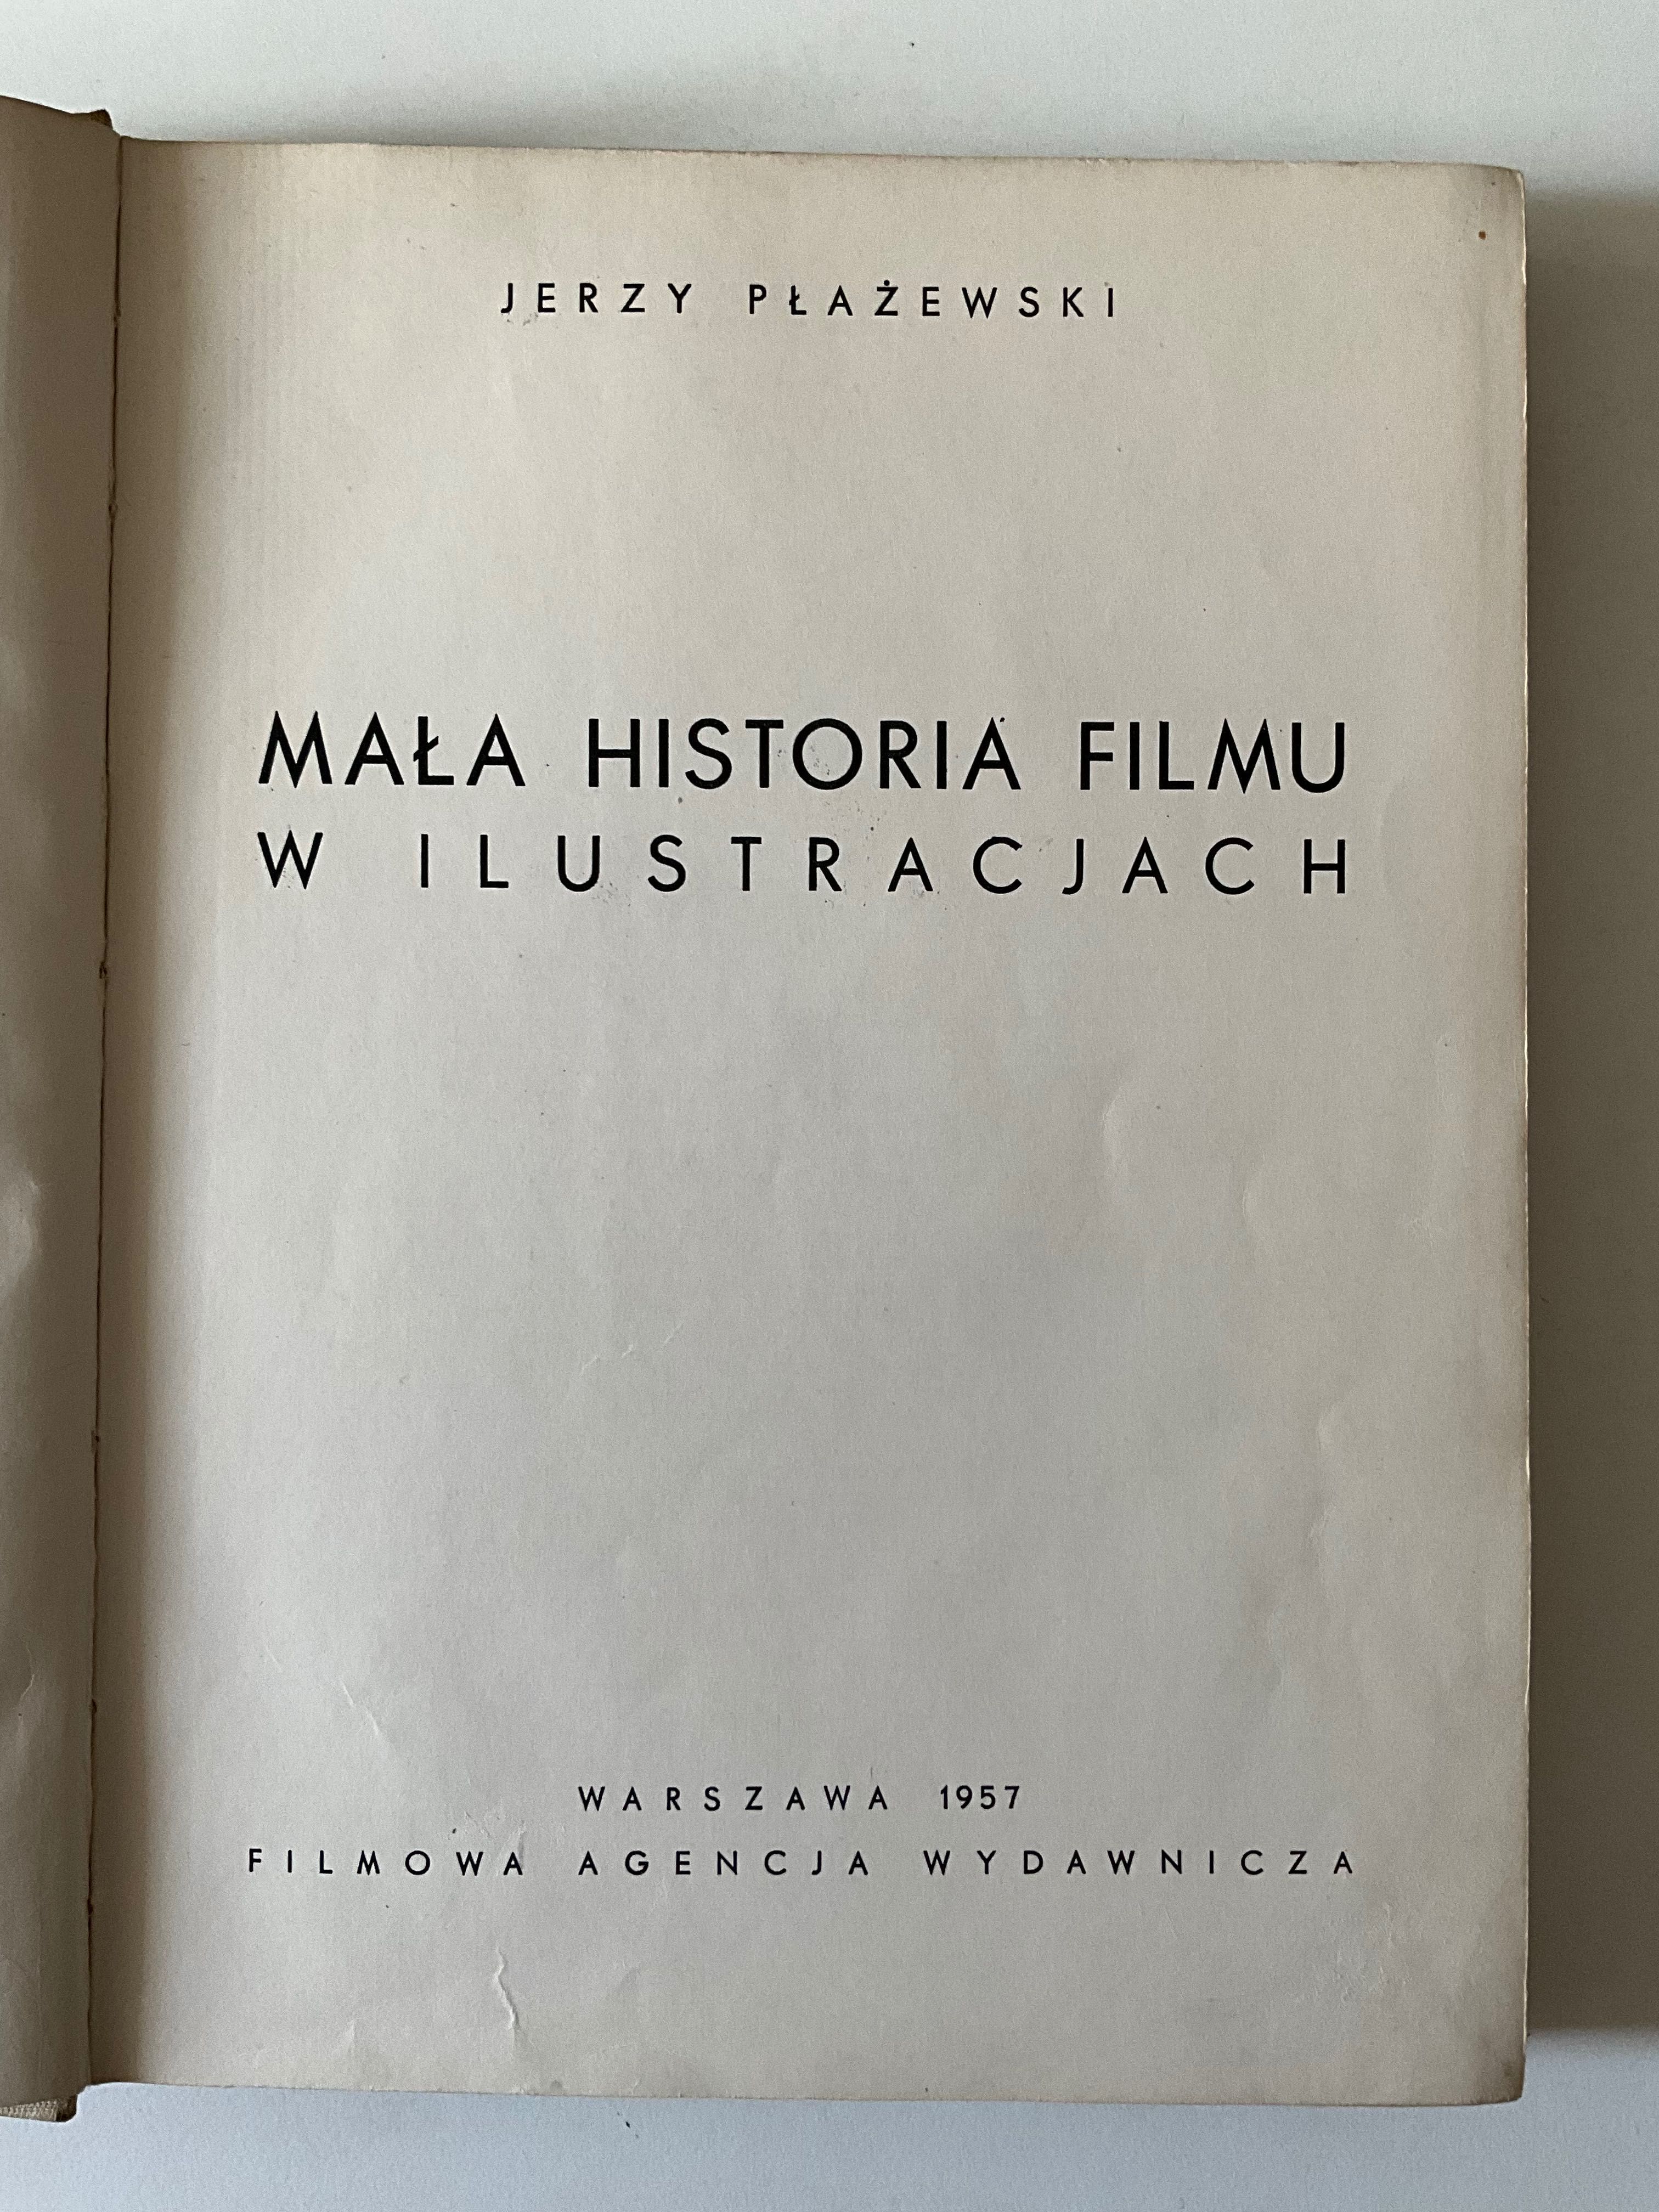 Książka „Mała historia filmu” Jerzy Płażewski